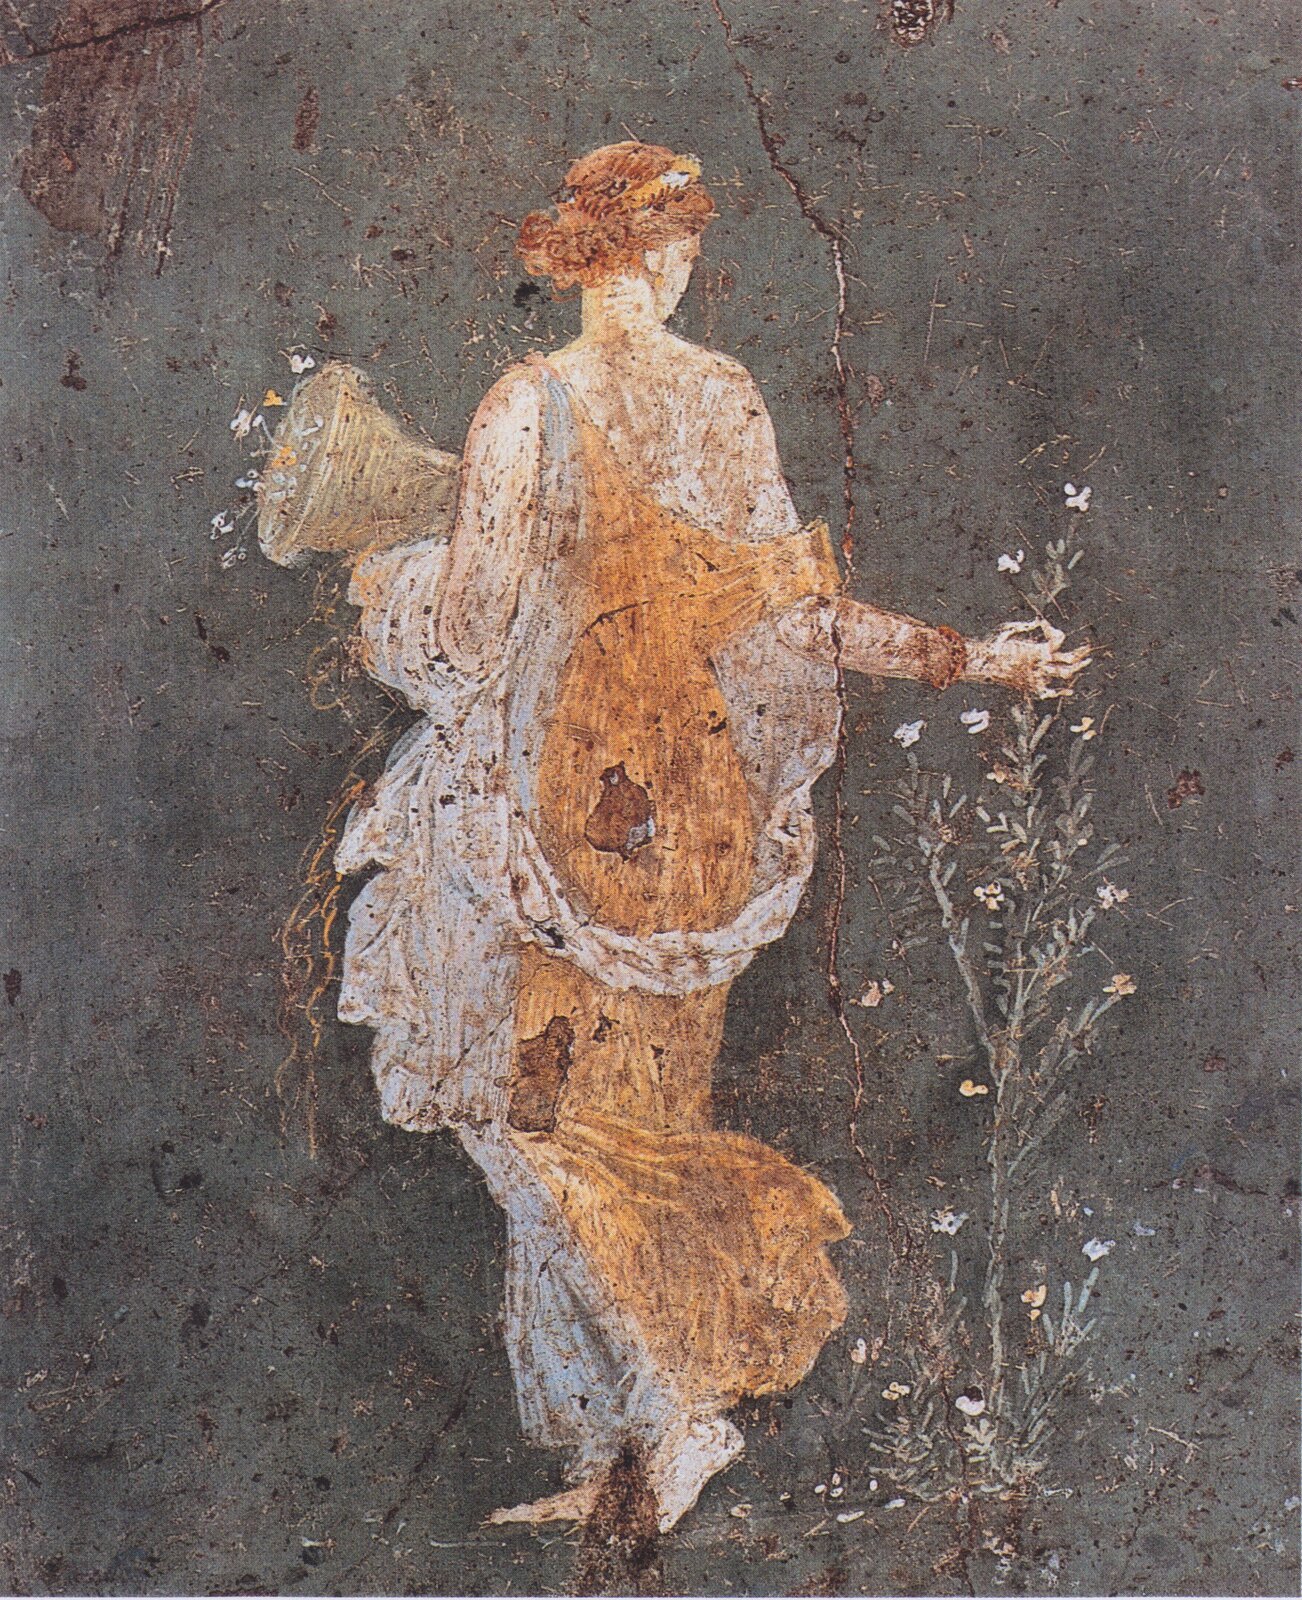 Fresk nieznanego autora przedstawia Florę – młodą kobietę, która przedstawiona jest tyłem do widza, ma spięte długie rude włosy, biało-brązową suknię. W jednej dłoni trzyma pojemnik, a drugą sięga po kwiat rośliny, która z wyglądu przypomina popularny chwast. Fresk został stworzony na ciemnej ścianie. 